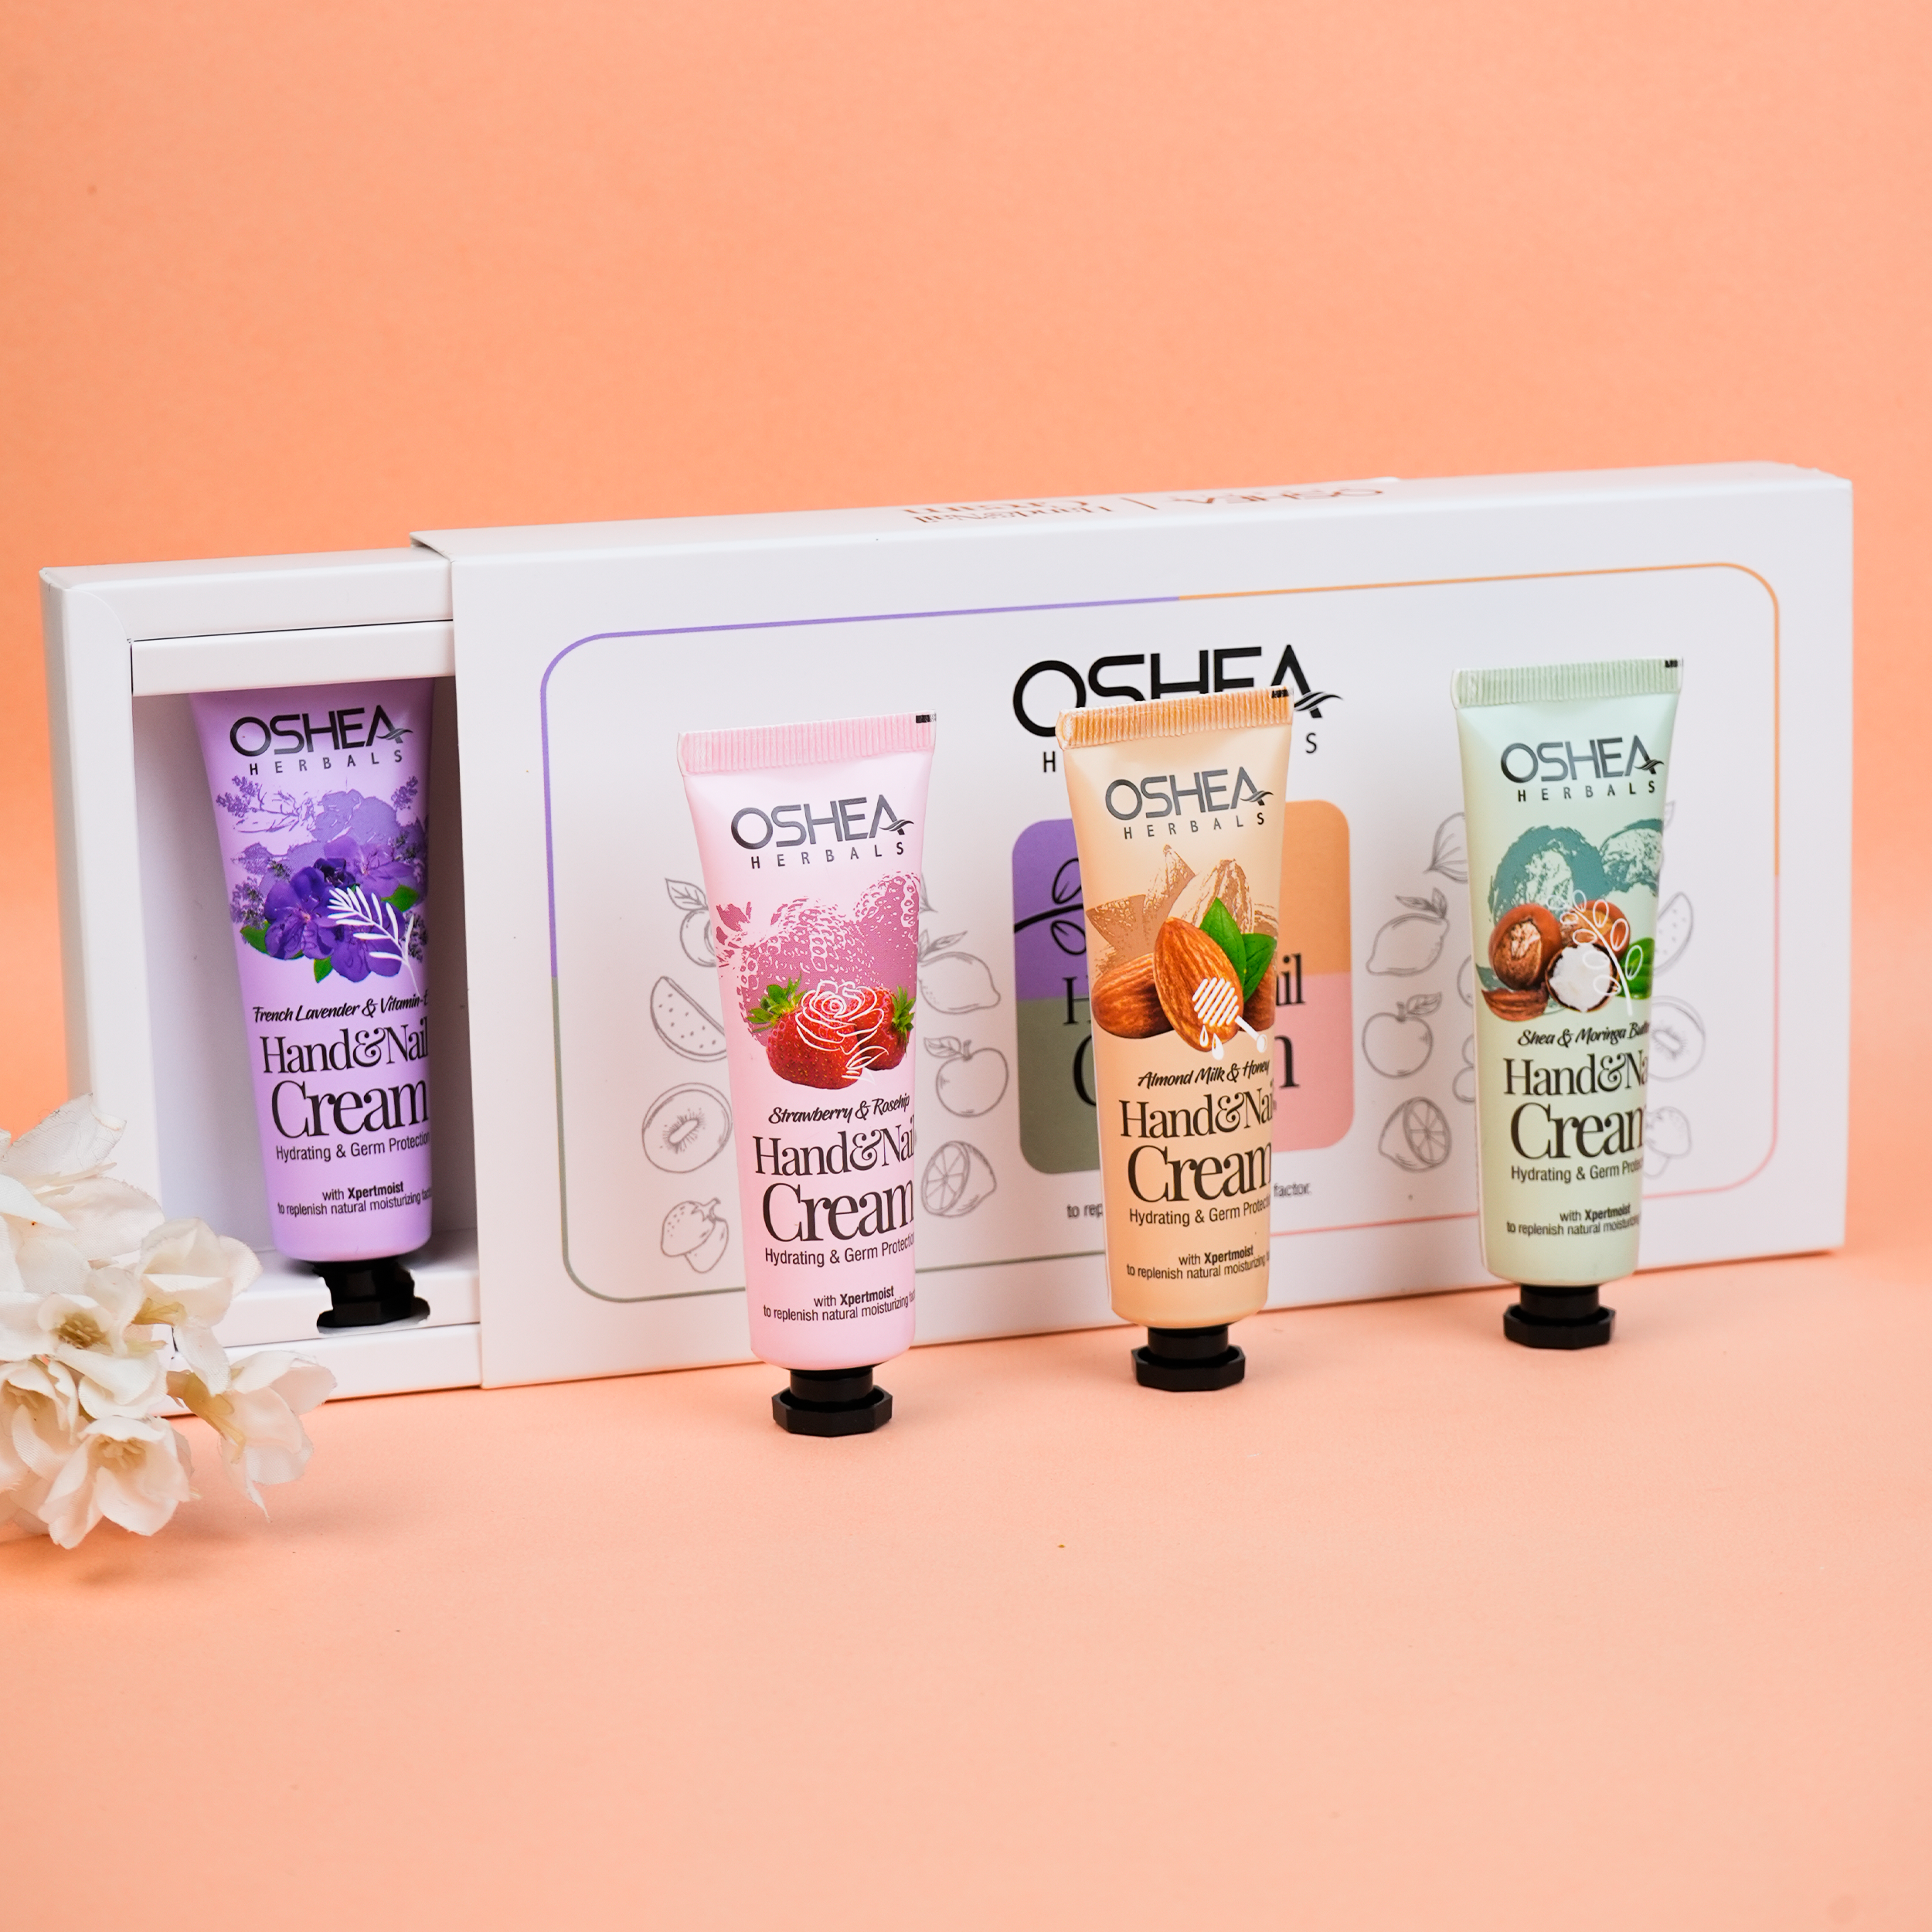 Hand Cream & Nail Cream Combo Pack 4 Oshea Herbals